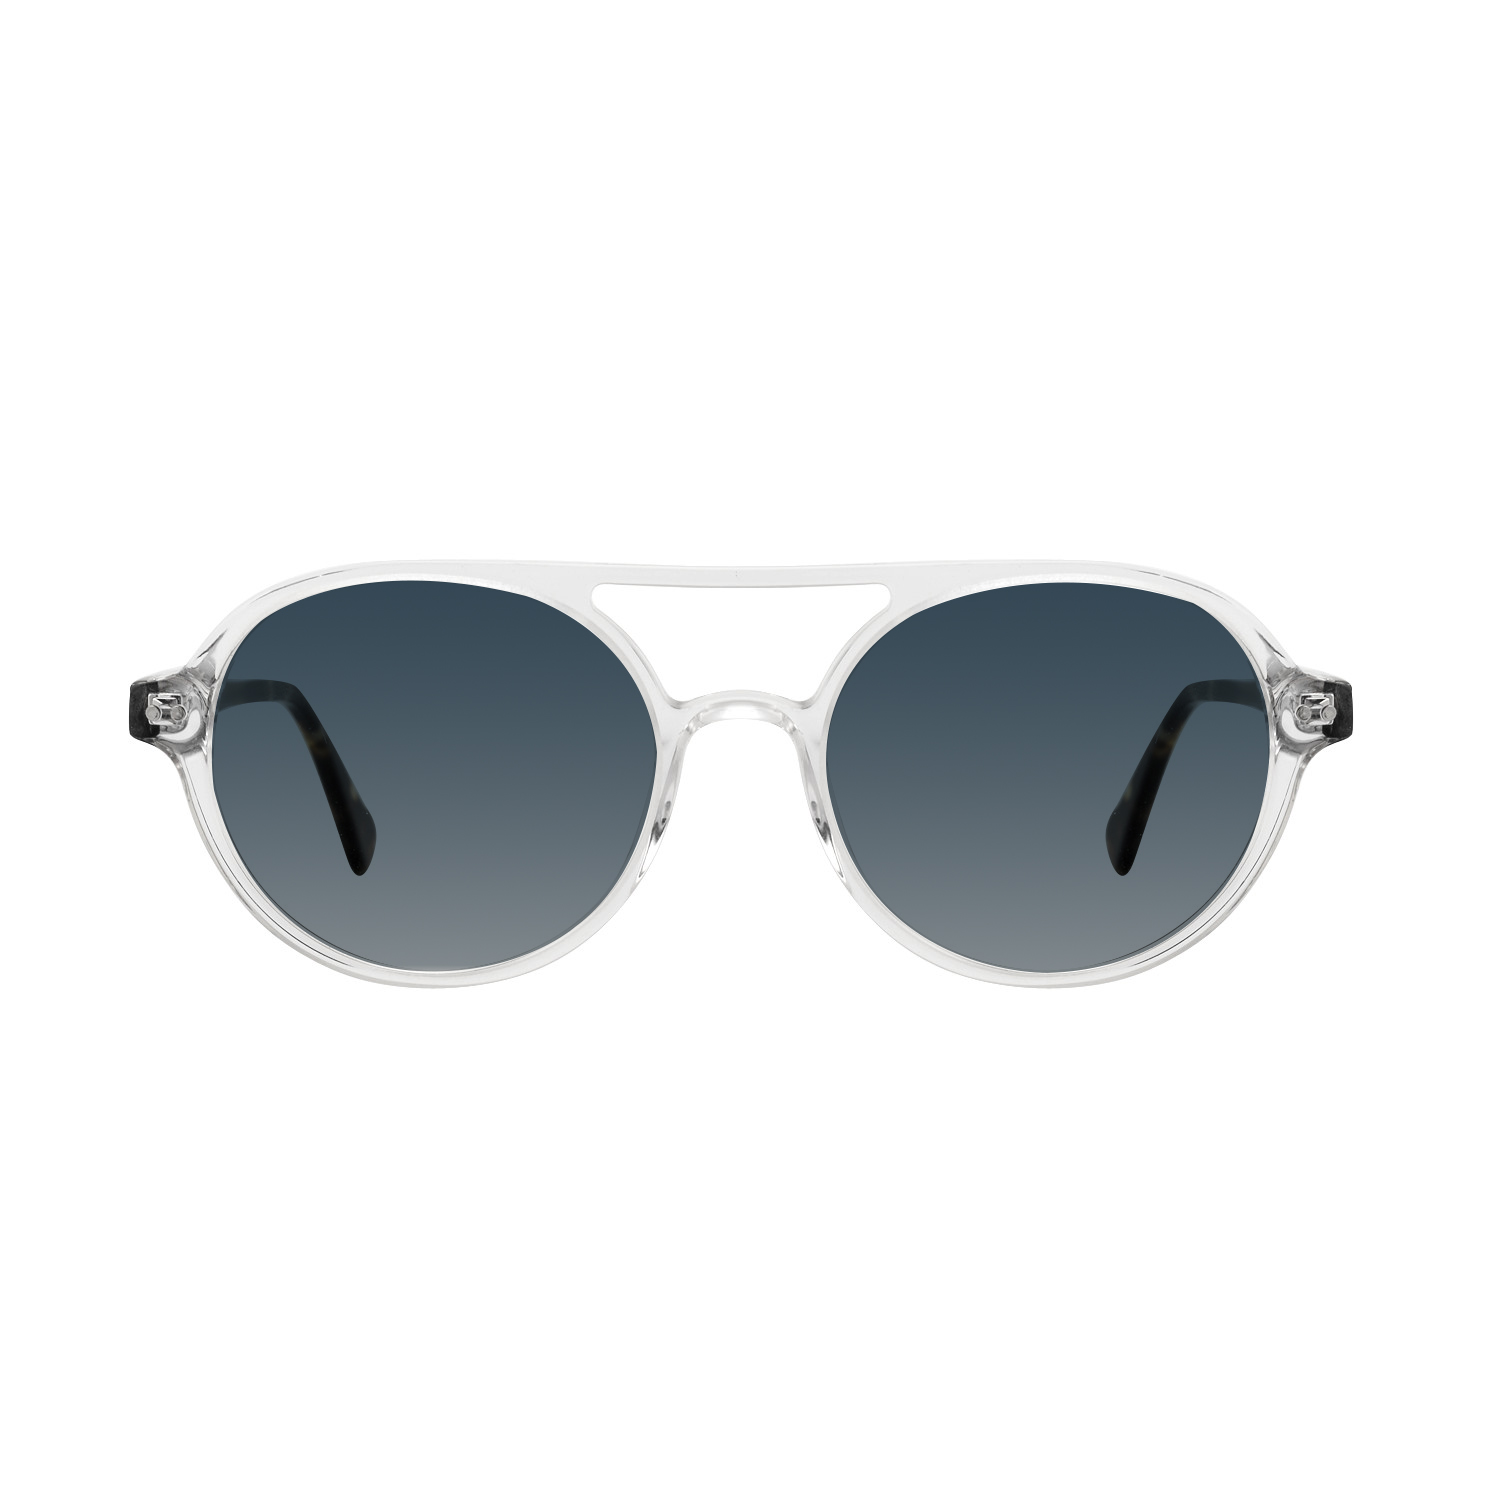 Buy Ermenegildo Zegna Clear Acetate Sunglasses EZ0203 53 51G (53) Online